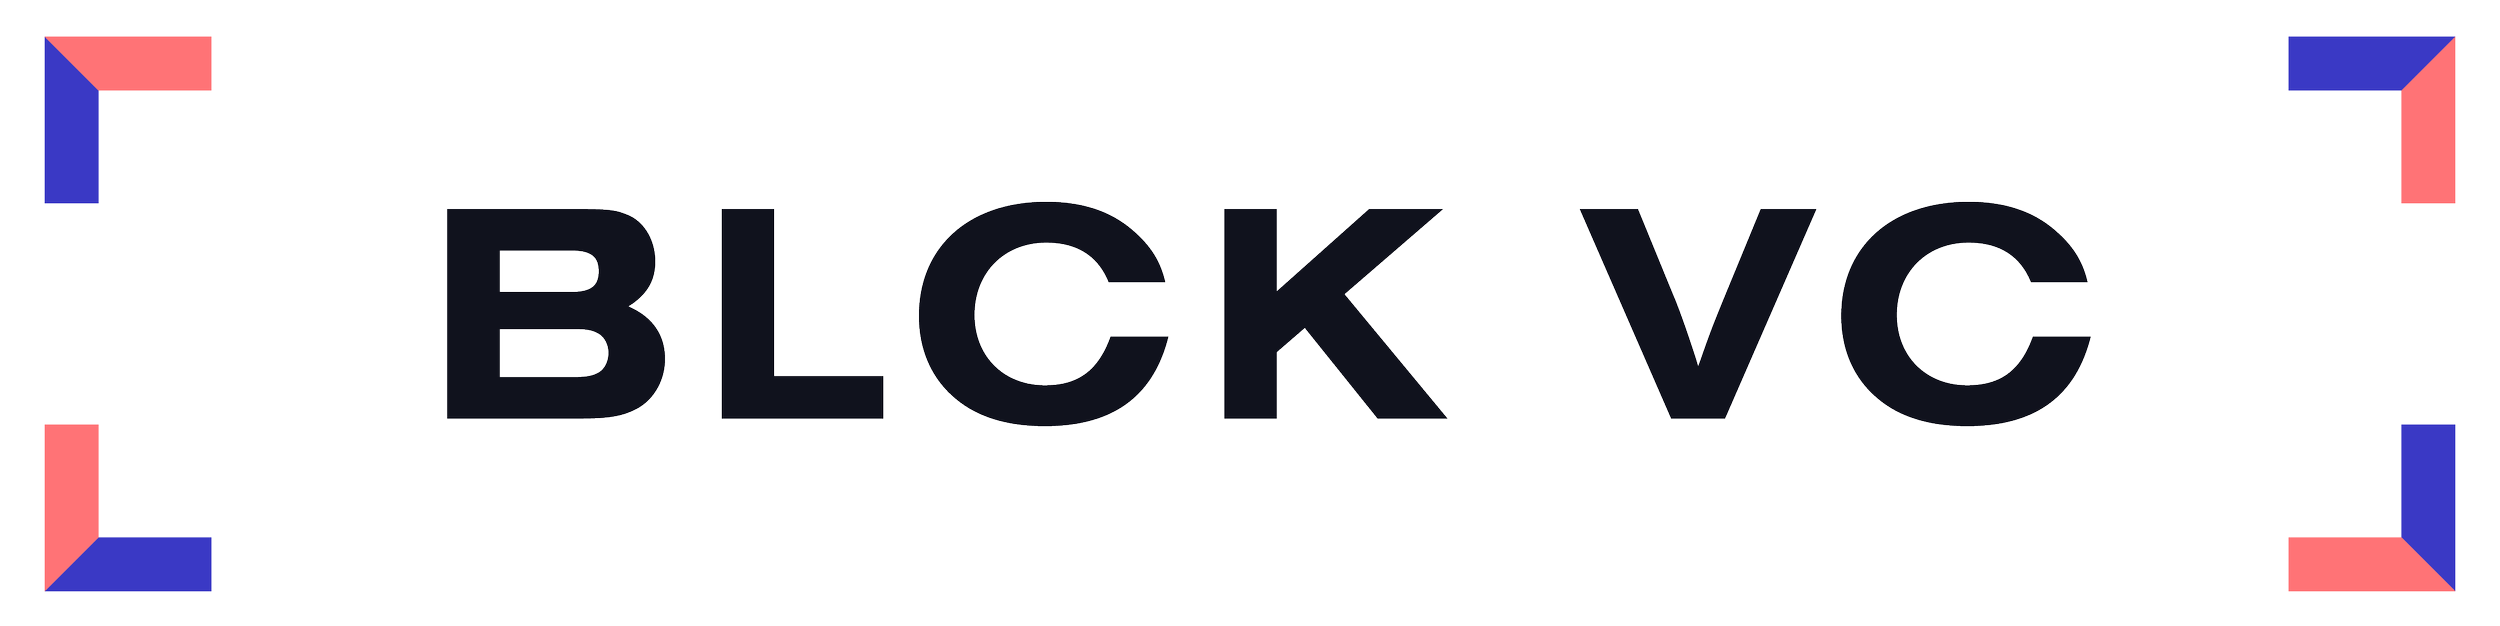 BLCK VC-Logos-04.png